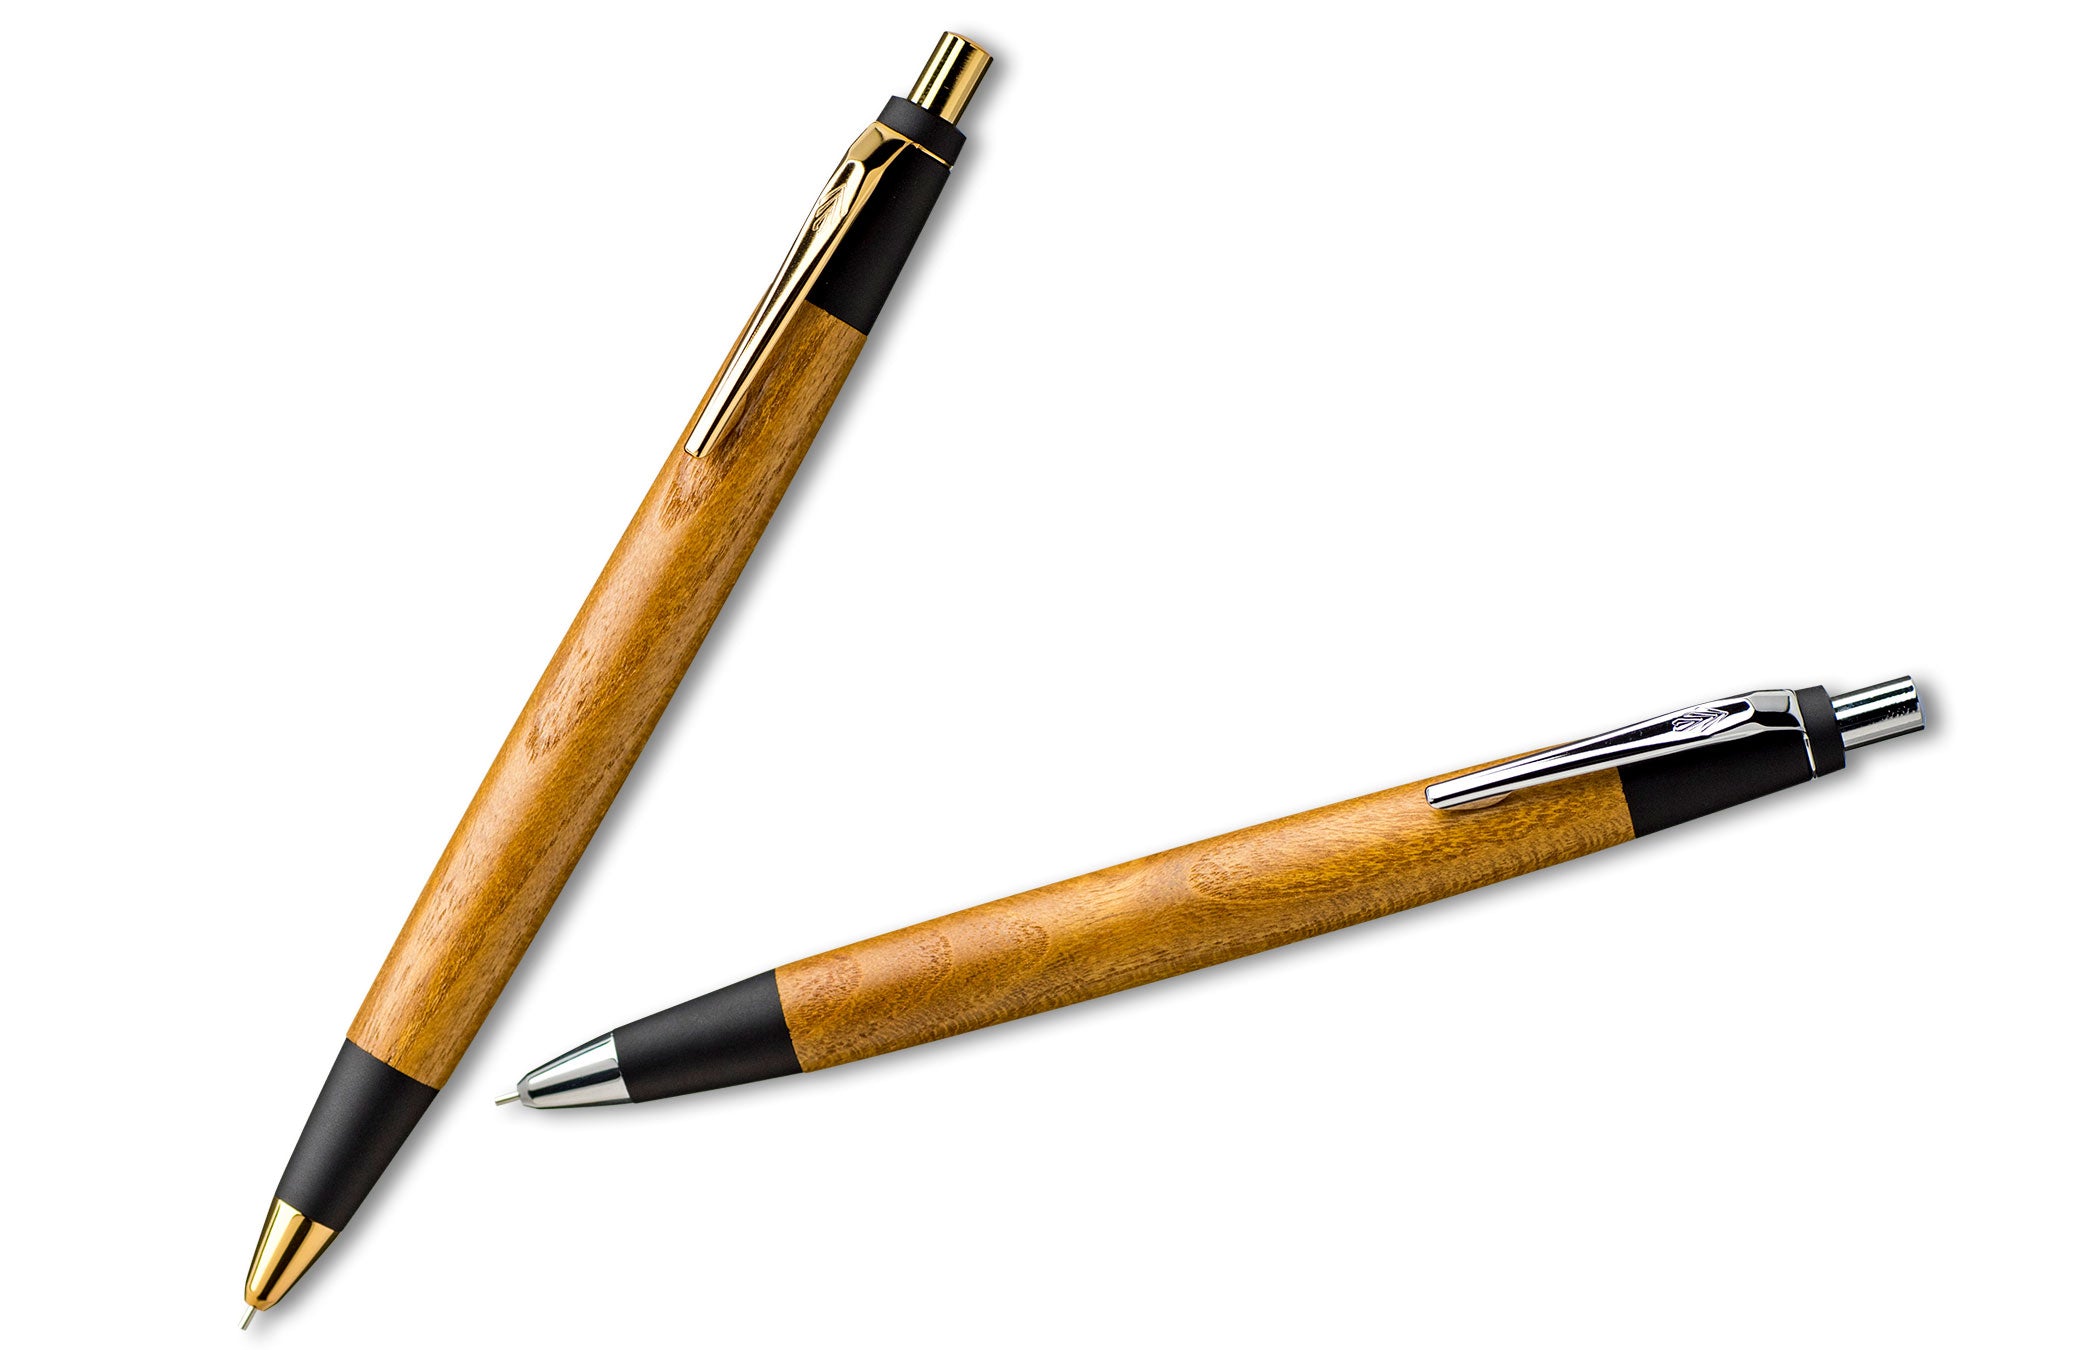 他の木軸ペンはこちら←野原工芸 桑 新型シャーペン0.5mm シルバー金具